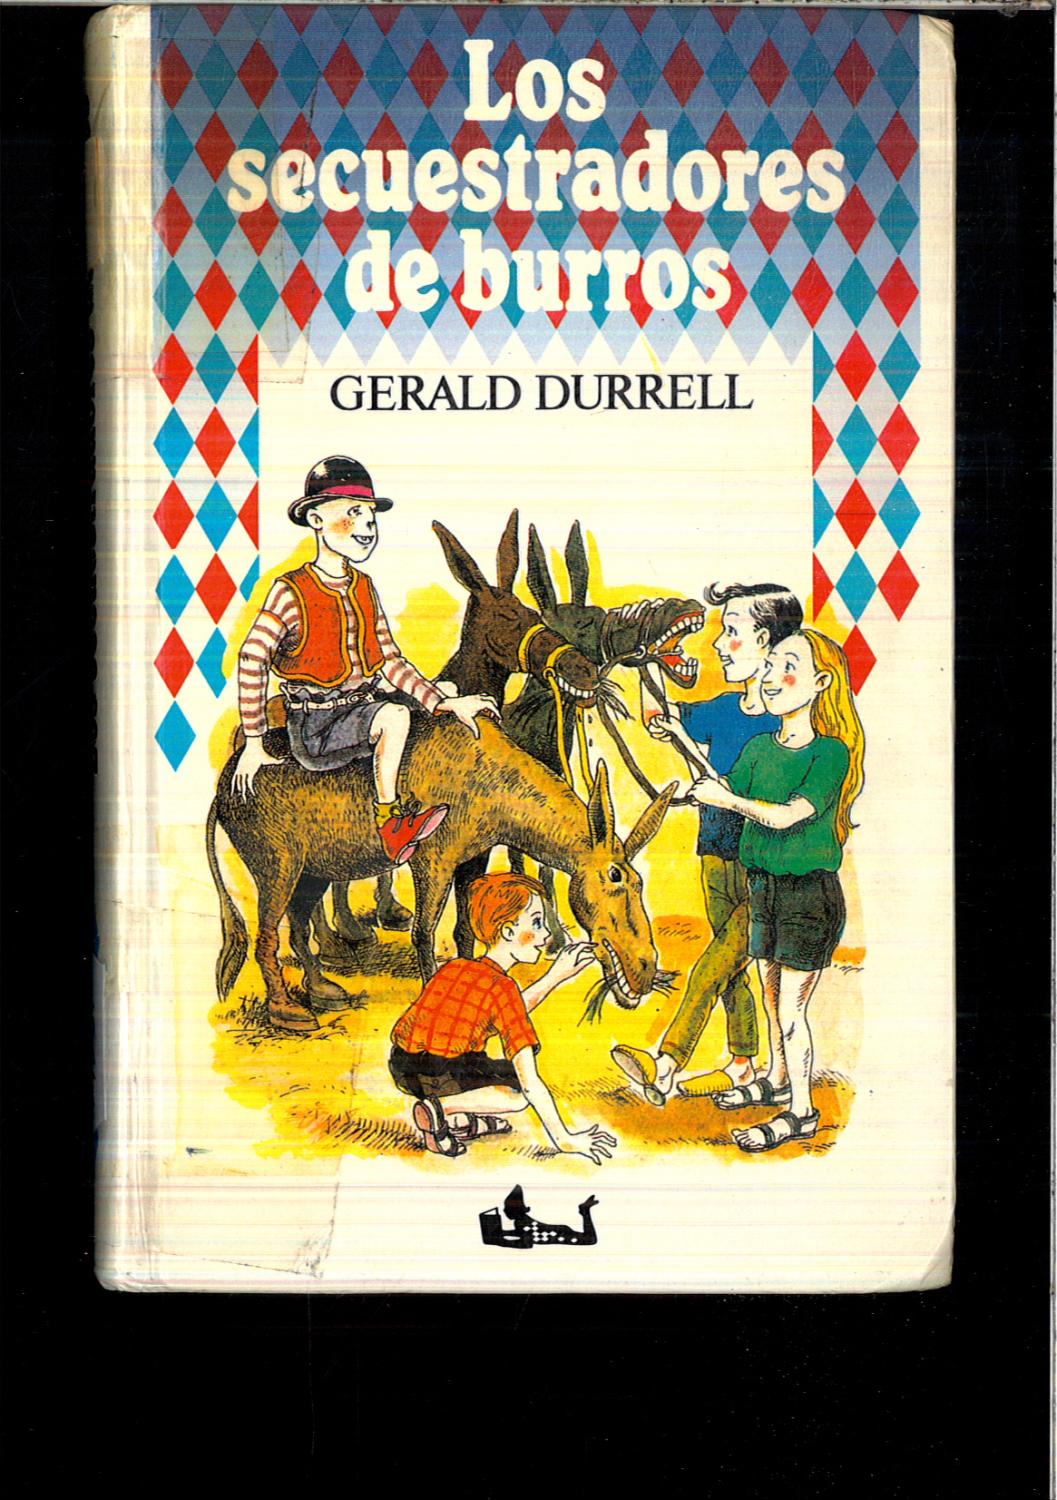 Los secuestradores de burros - GERALD DURRELL